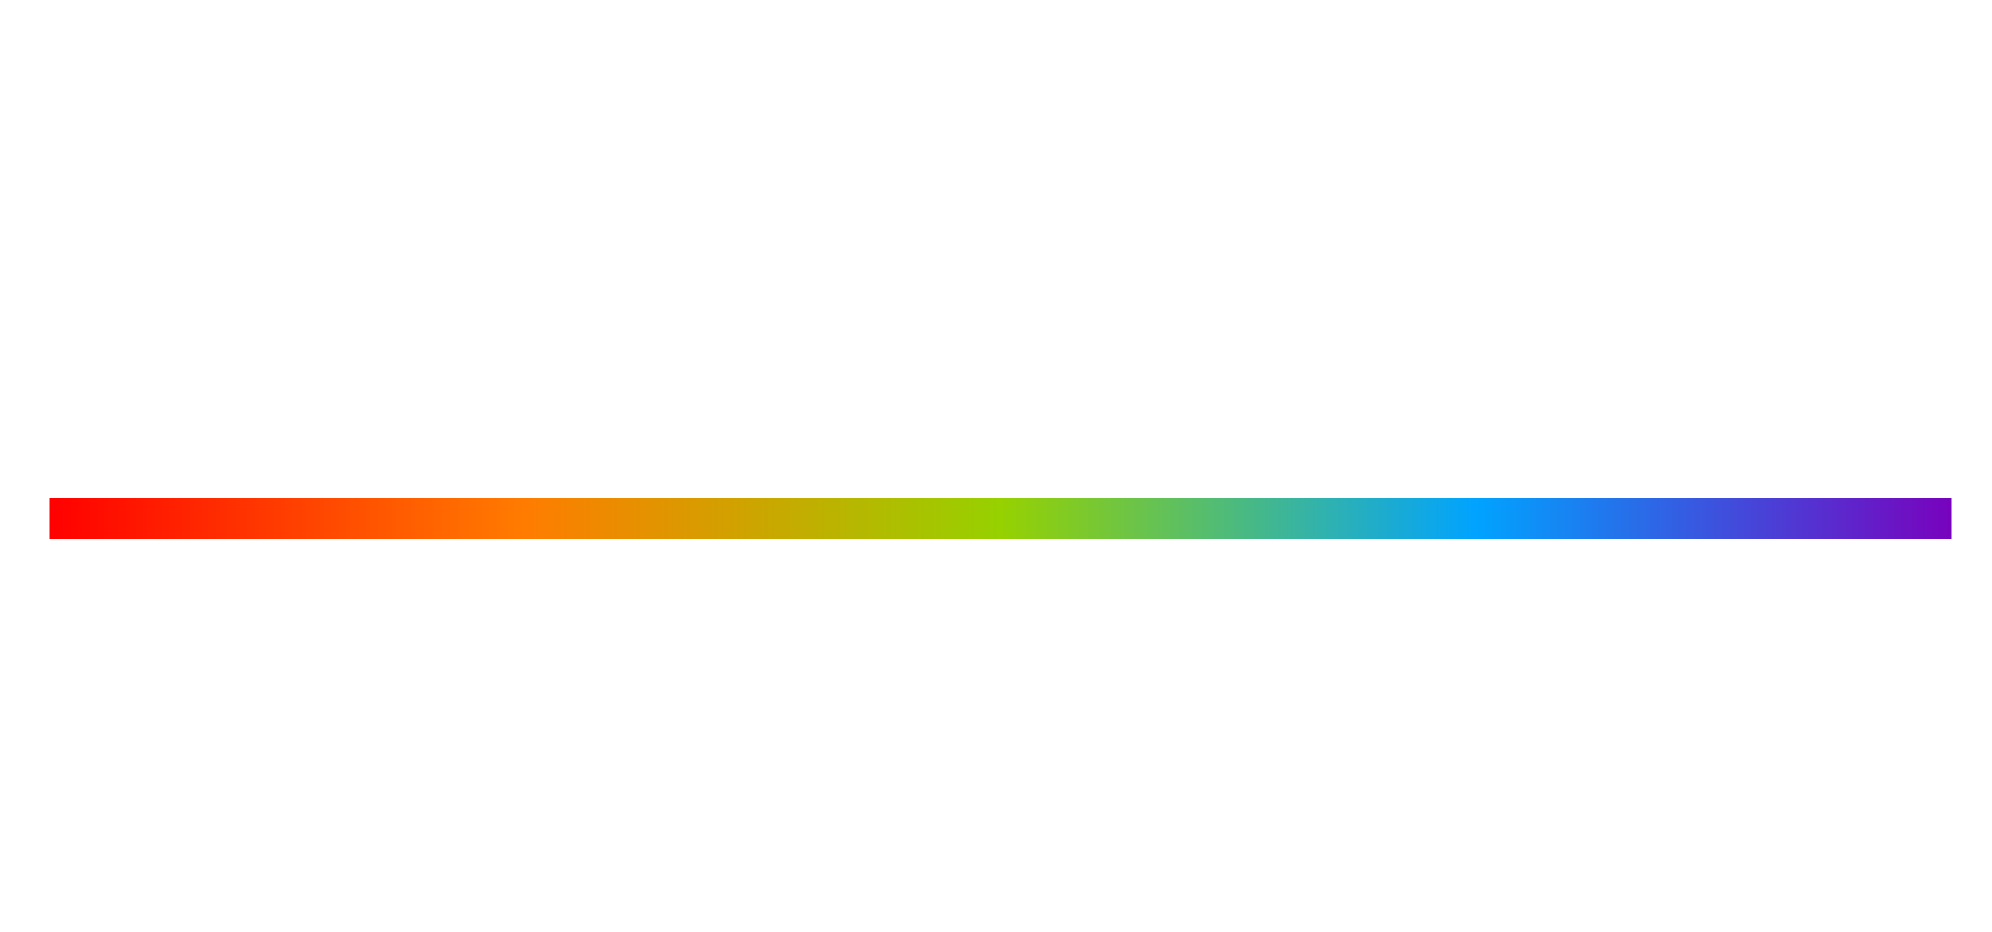 Colegio de ópticos Provincia de Buenos Aires